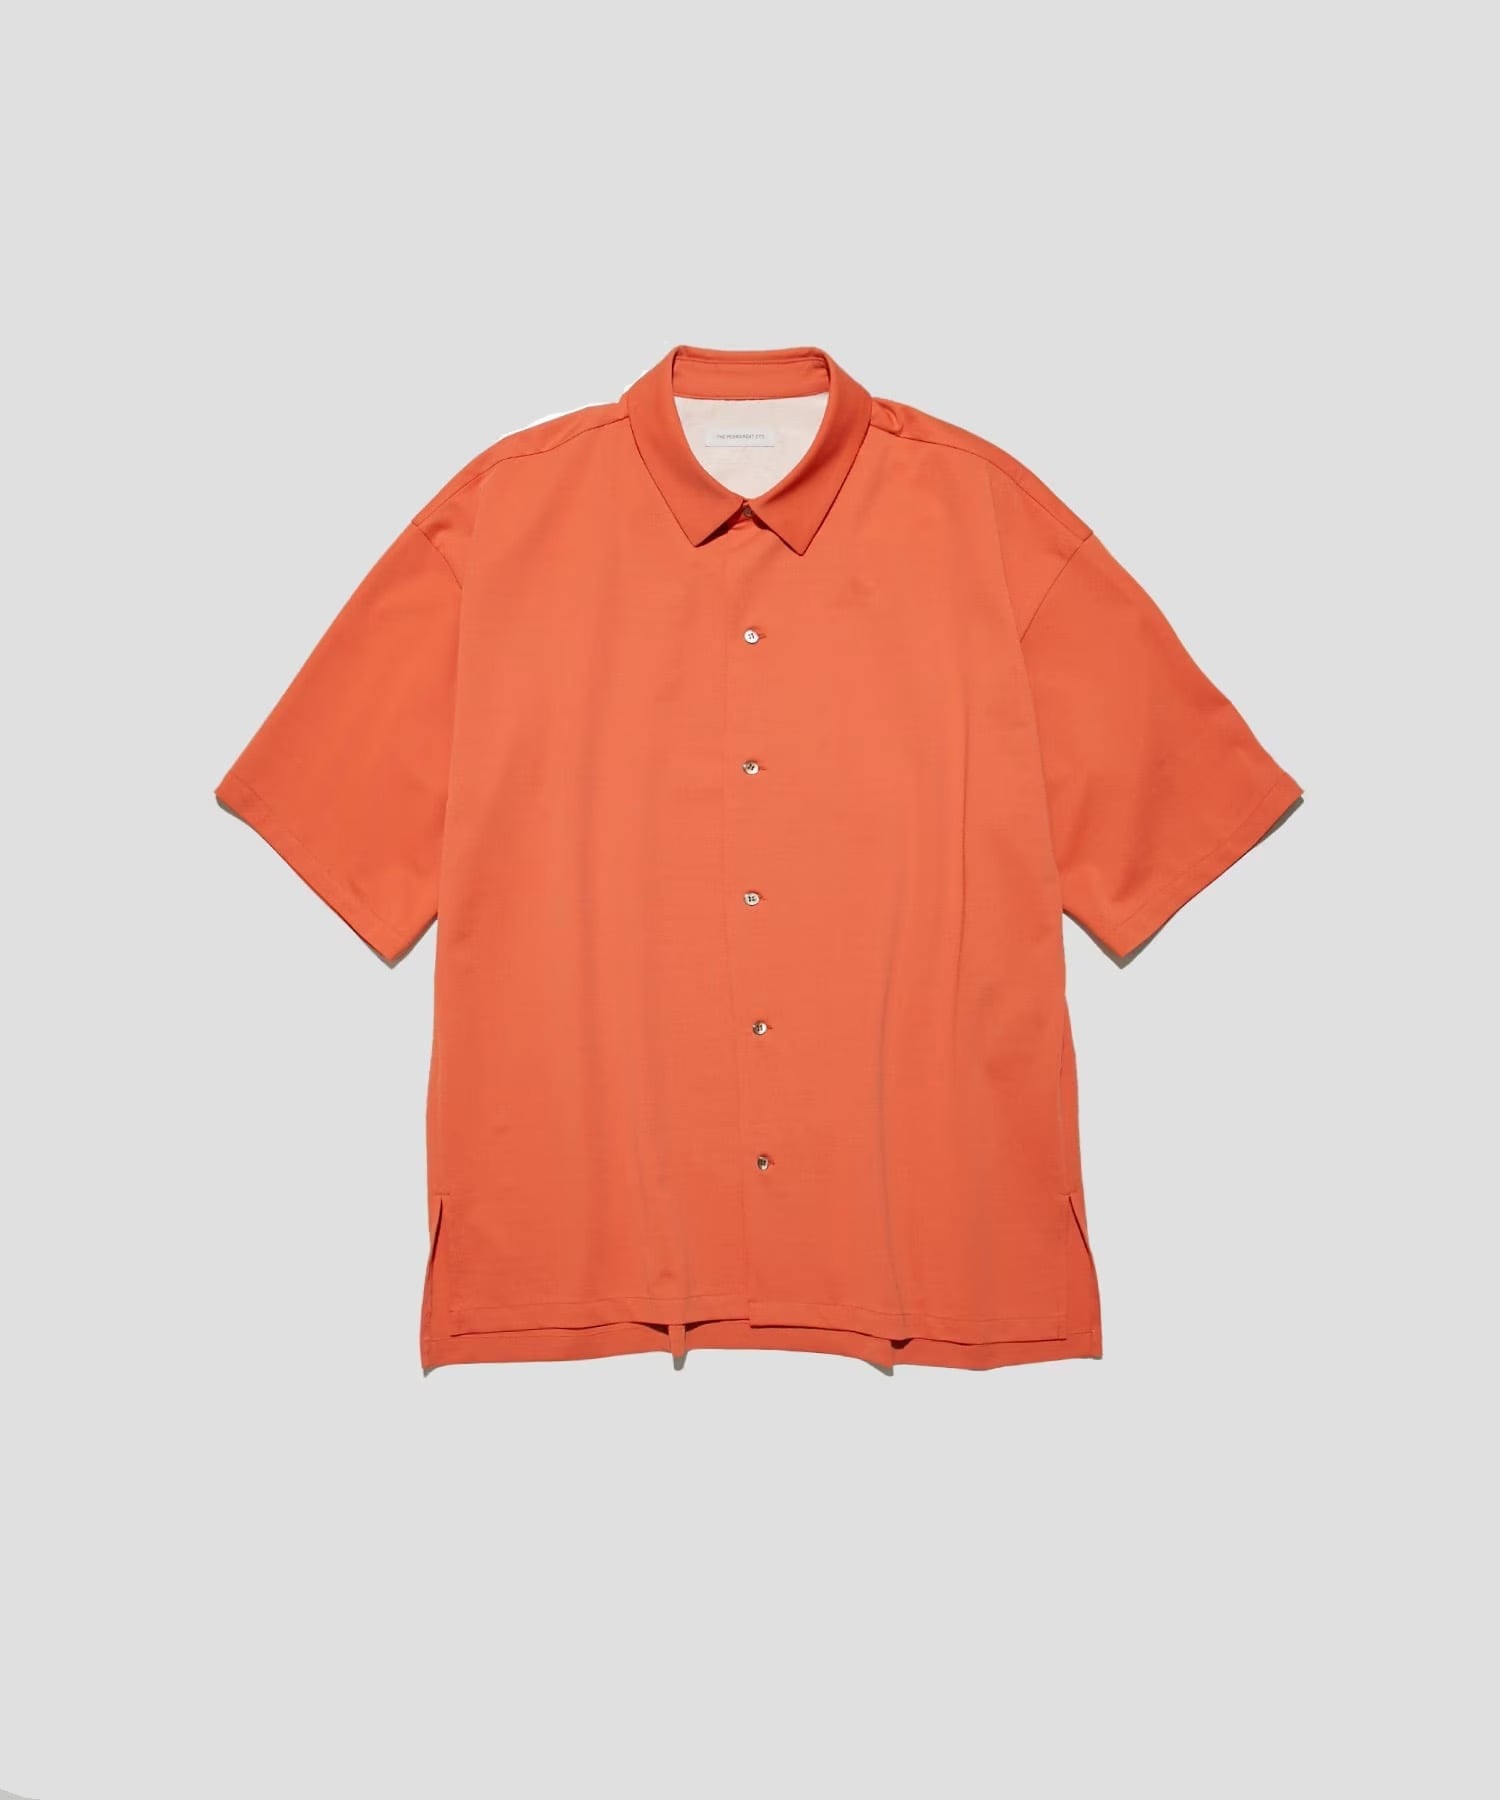 Matte Stretch Jersey S/S Shirt